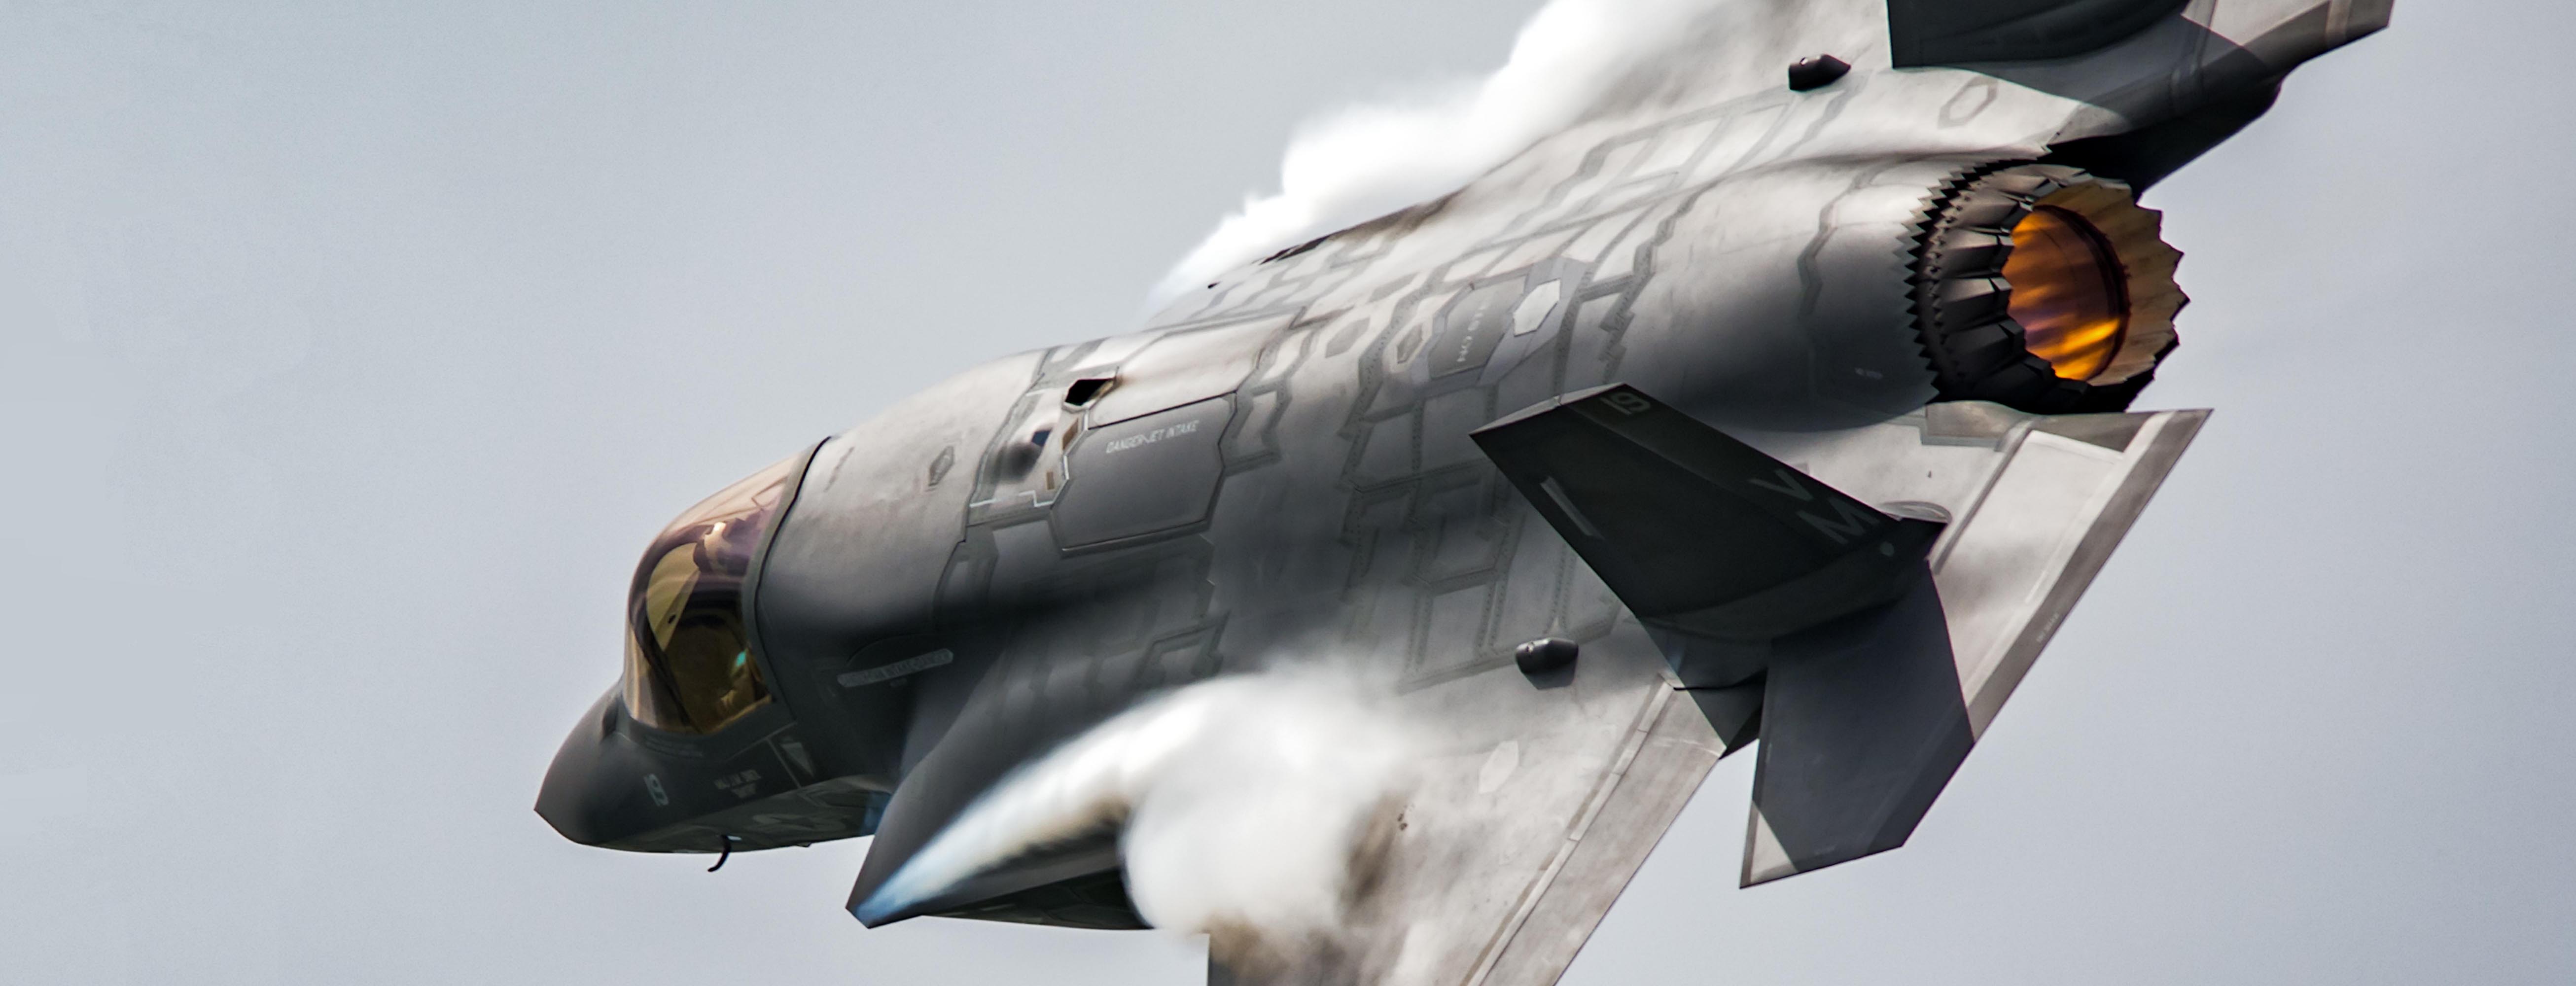 Et militært fly, F-35 Joint Strike Fighter, flyr forbi